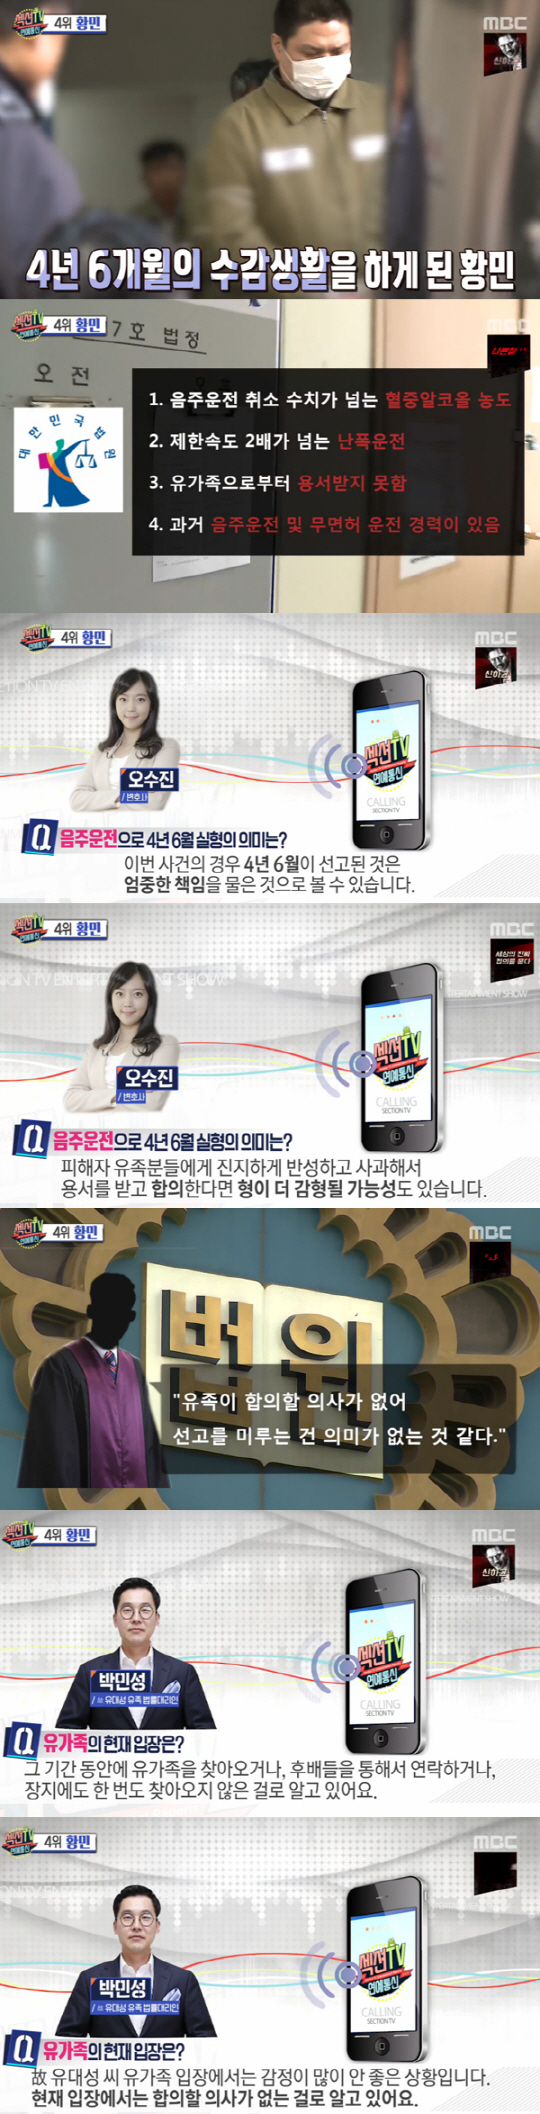 '섹션TV' 황민, 징역 4년 6월 선고…유족 측 "합의 의사 없다"